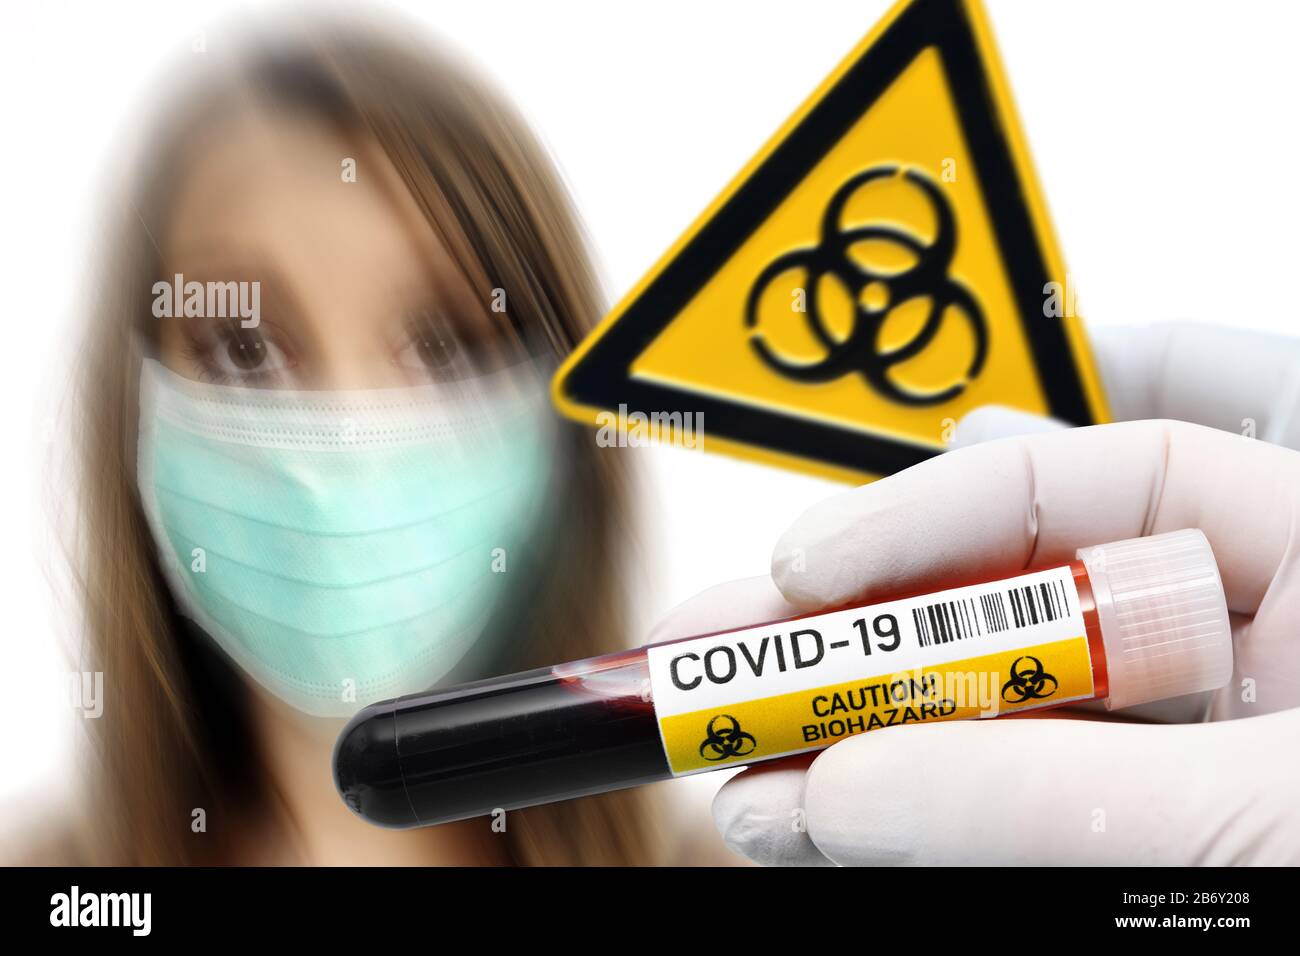 FOTOMONTAGE, Haende halten Blutentnahmeroehrchen und Biogefaehrdungsschild vor Frau mit Atemschutzmaske, Symbolfoto Coronavirus Stock Photo